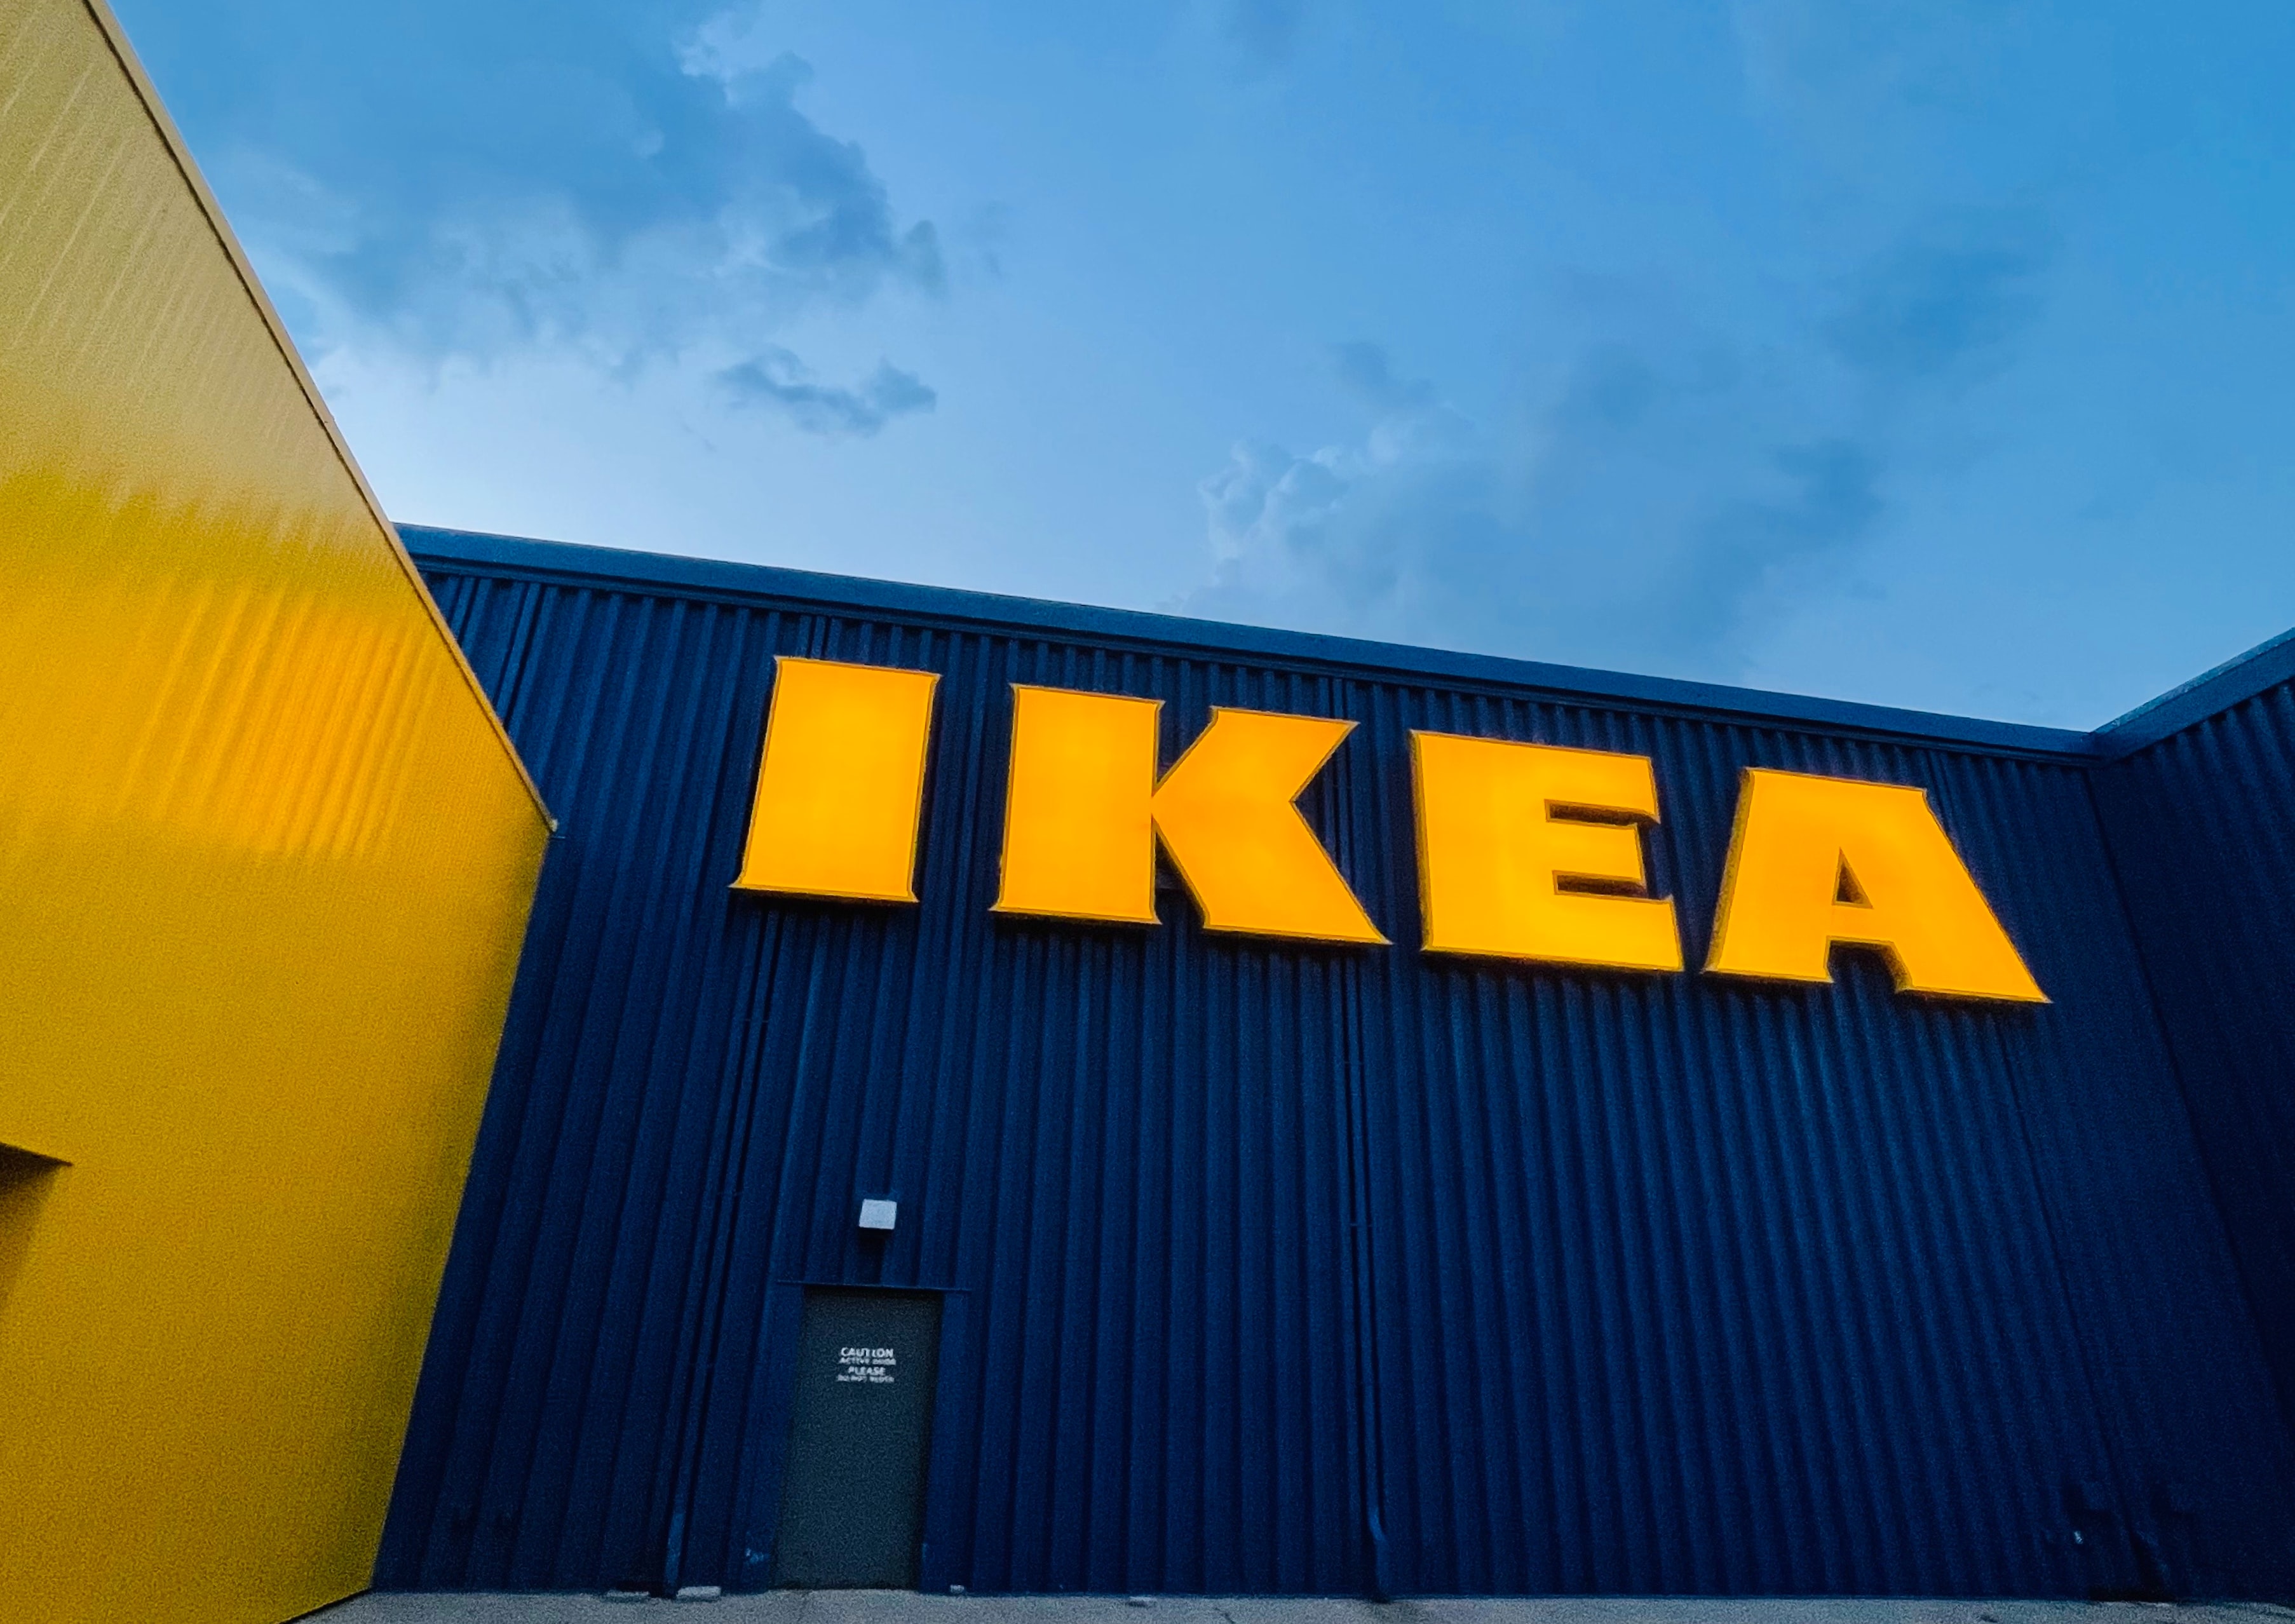 IKEA сократила больничные выплаты непривитым британским сотрудникам, IKEA, ИКЕА, IKEA новости, ИКЕА новости, IKEA новости сегодня, ИКЕА новости сегодня, IKEA последние новости, ИКЕА последние новости, сокращения больничных выплат, пандемия, не вакцинированные сотрудники, ИКЕА в Великобритании, ИКЕА ограничения для сотрудников